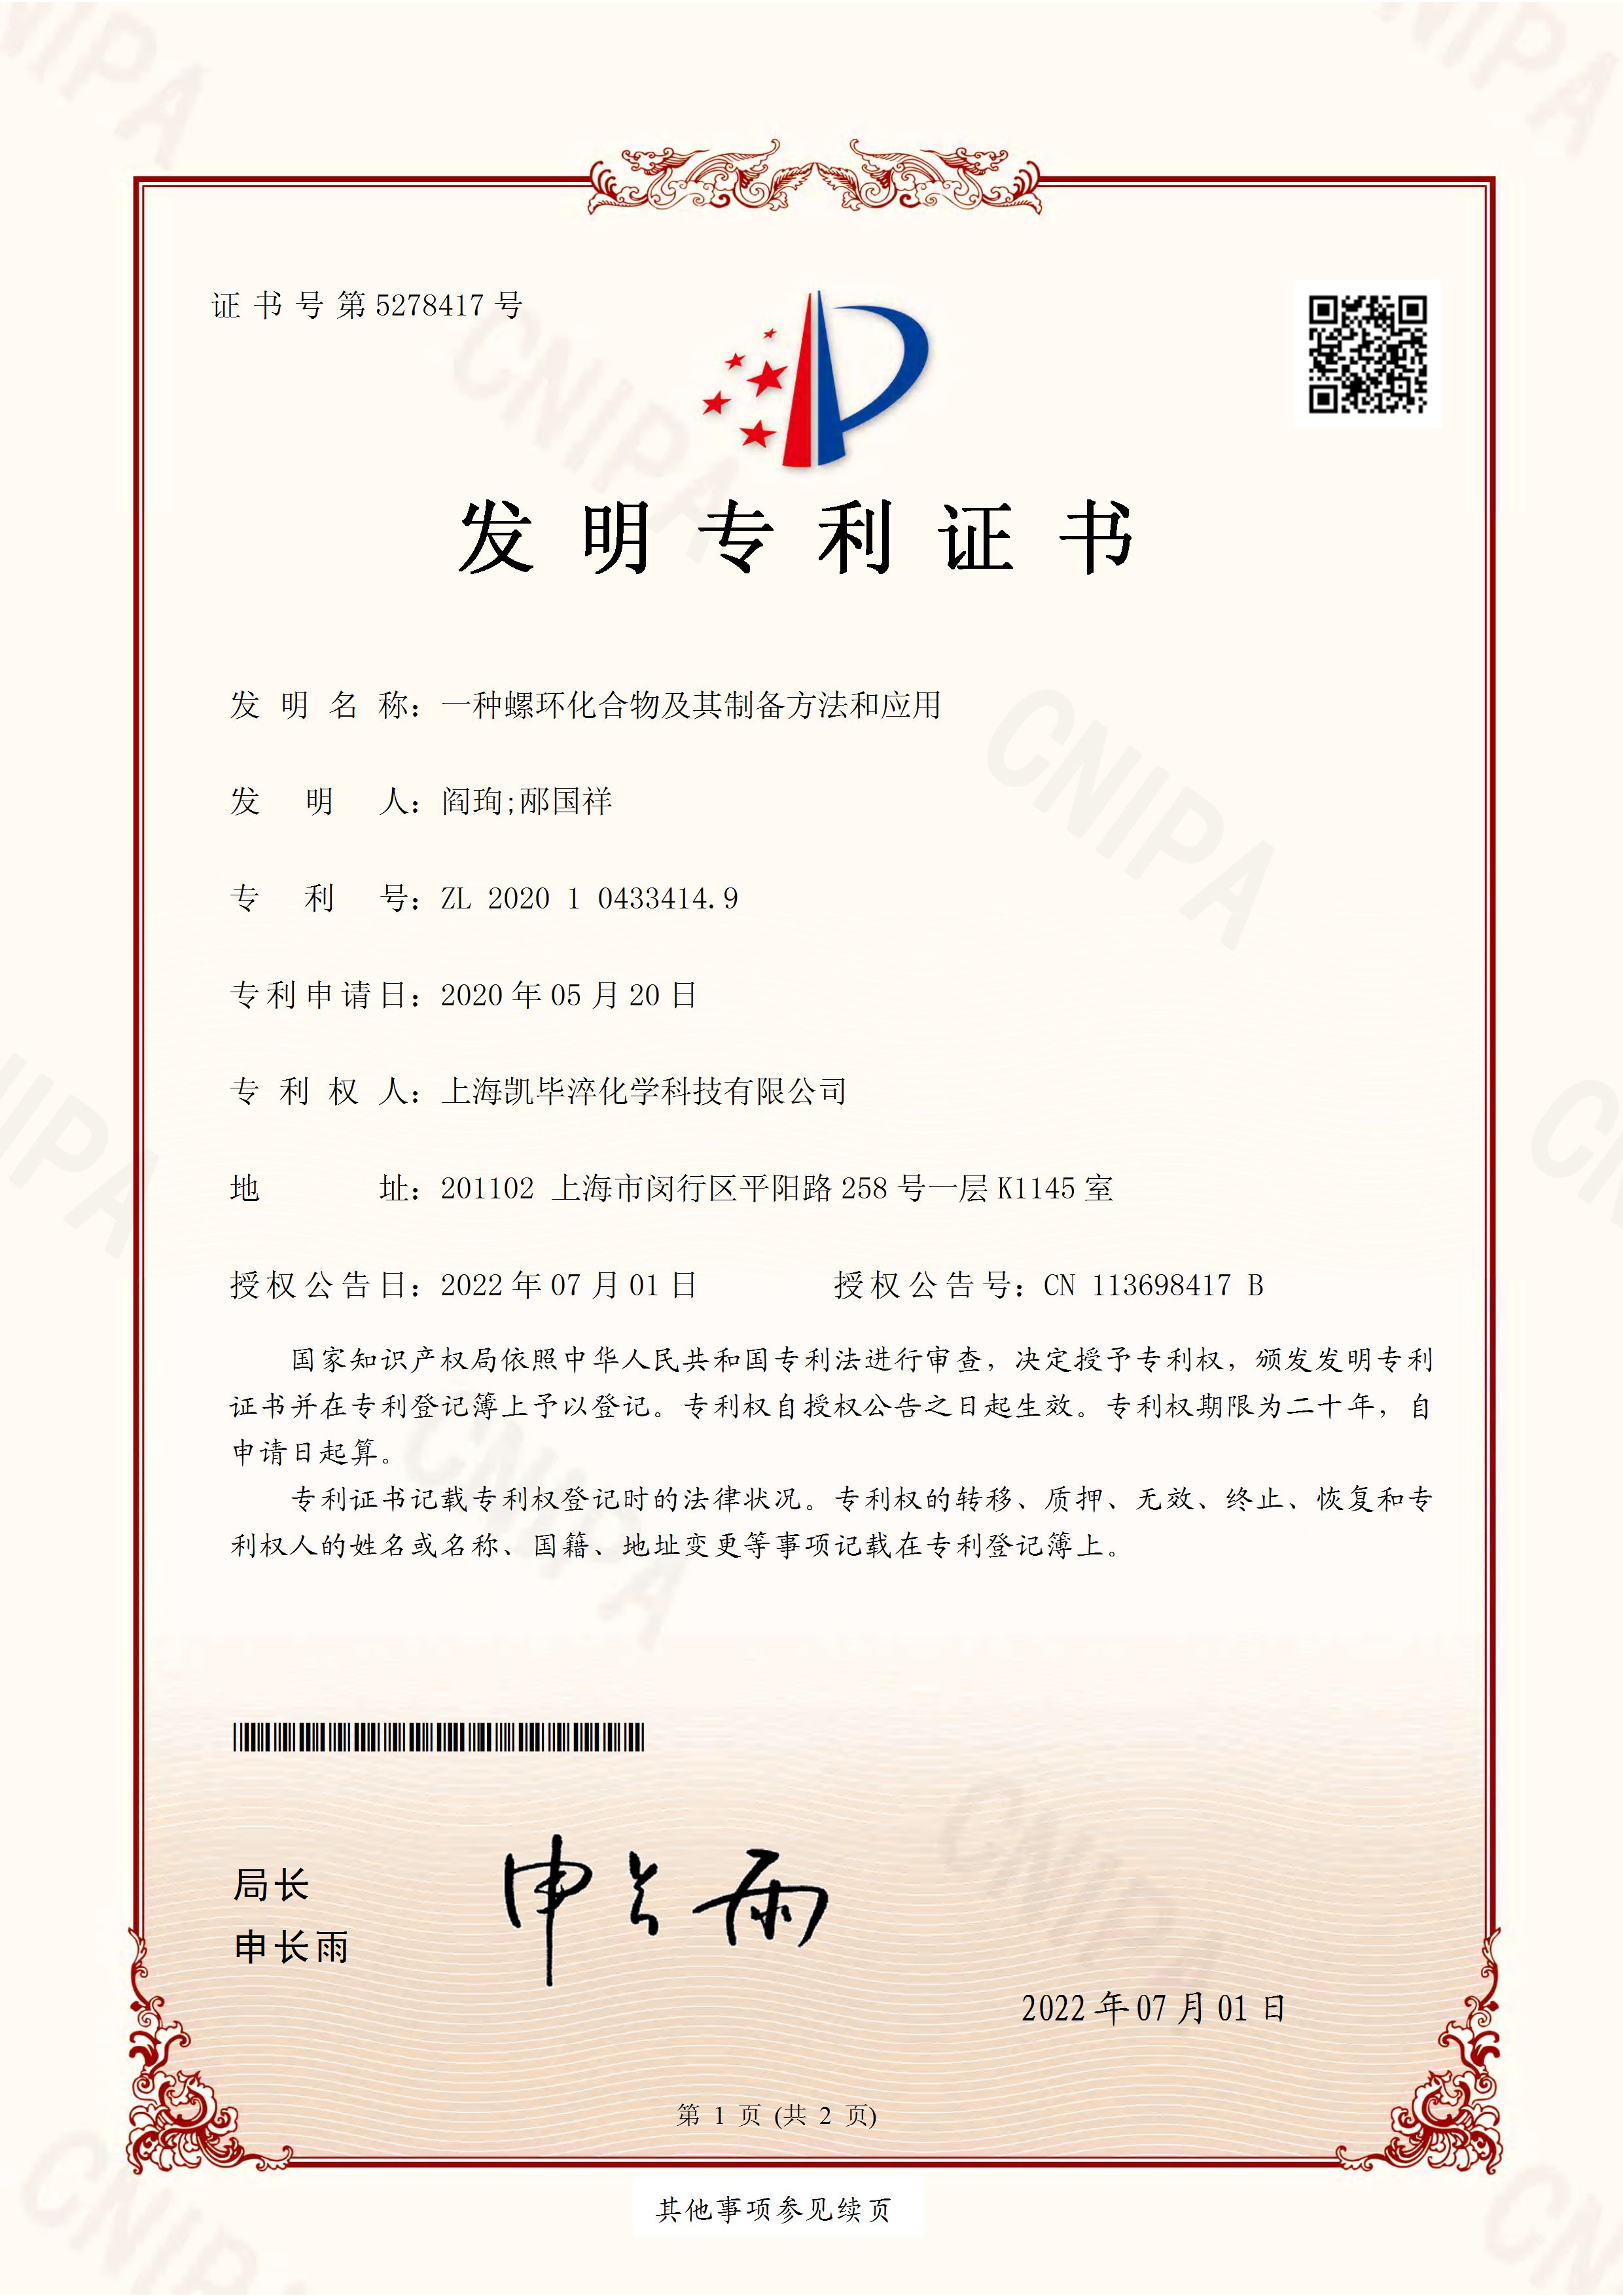 上海凯毕淬化学科技有限公司-2020104334149 -一种螺环化合物及其制备方法和应用_页面_1.jpg